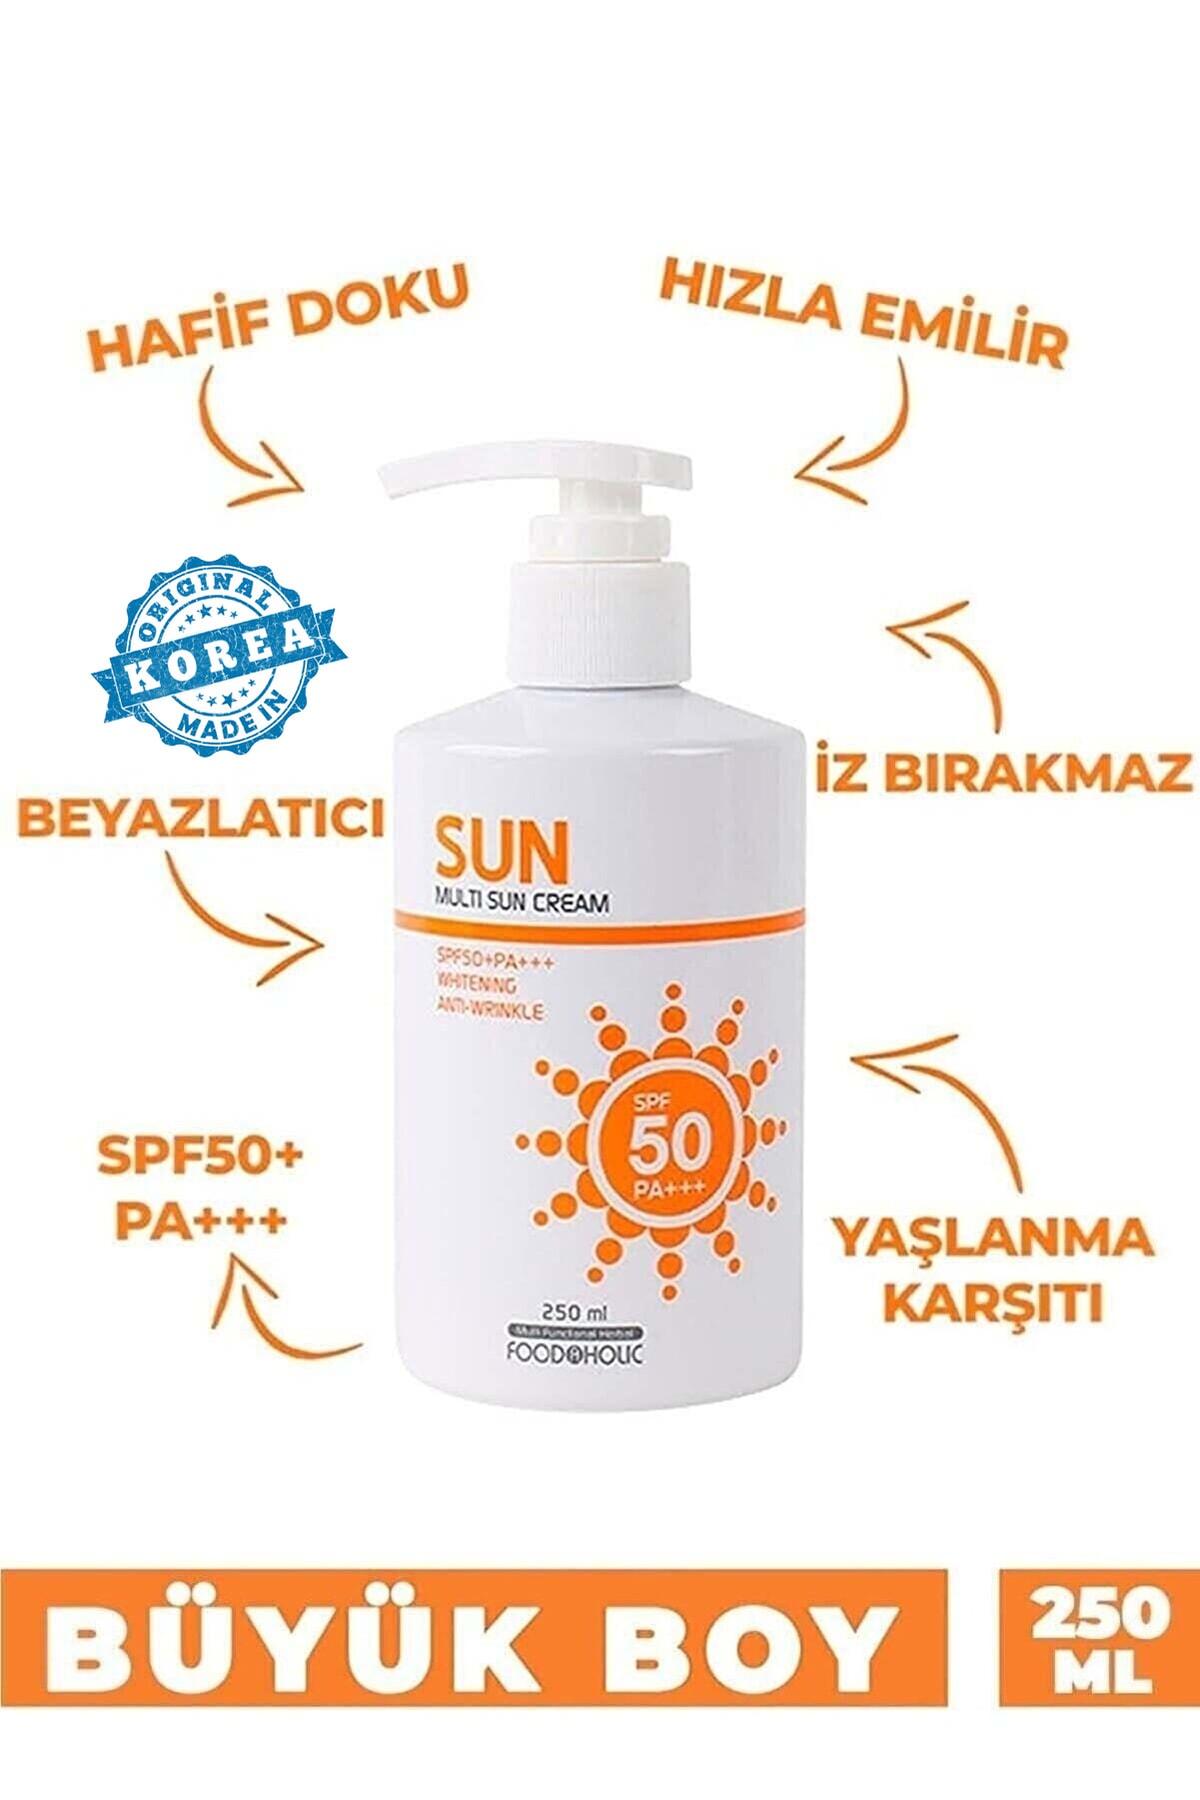 FOODAHOLIC Multi Sun 250ml Adenozin Içeren Yapışkan His Bırakmayan Leke Karşıtı Spf50 Pa Uva/uvb Güneş Kremi